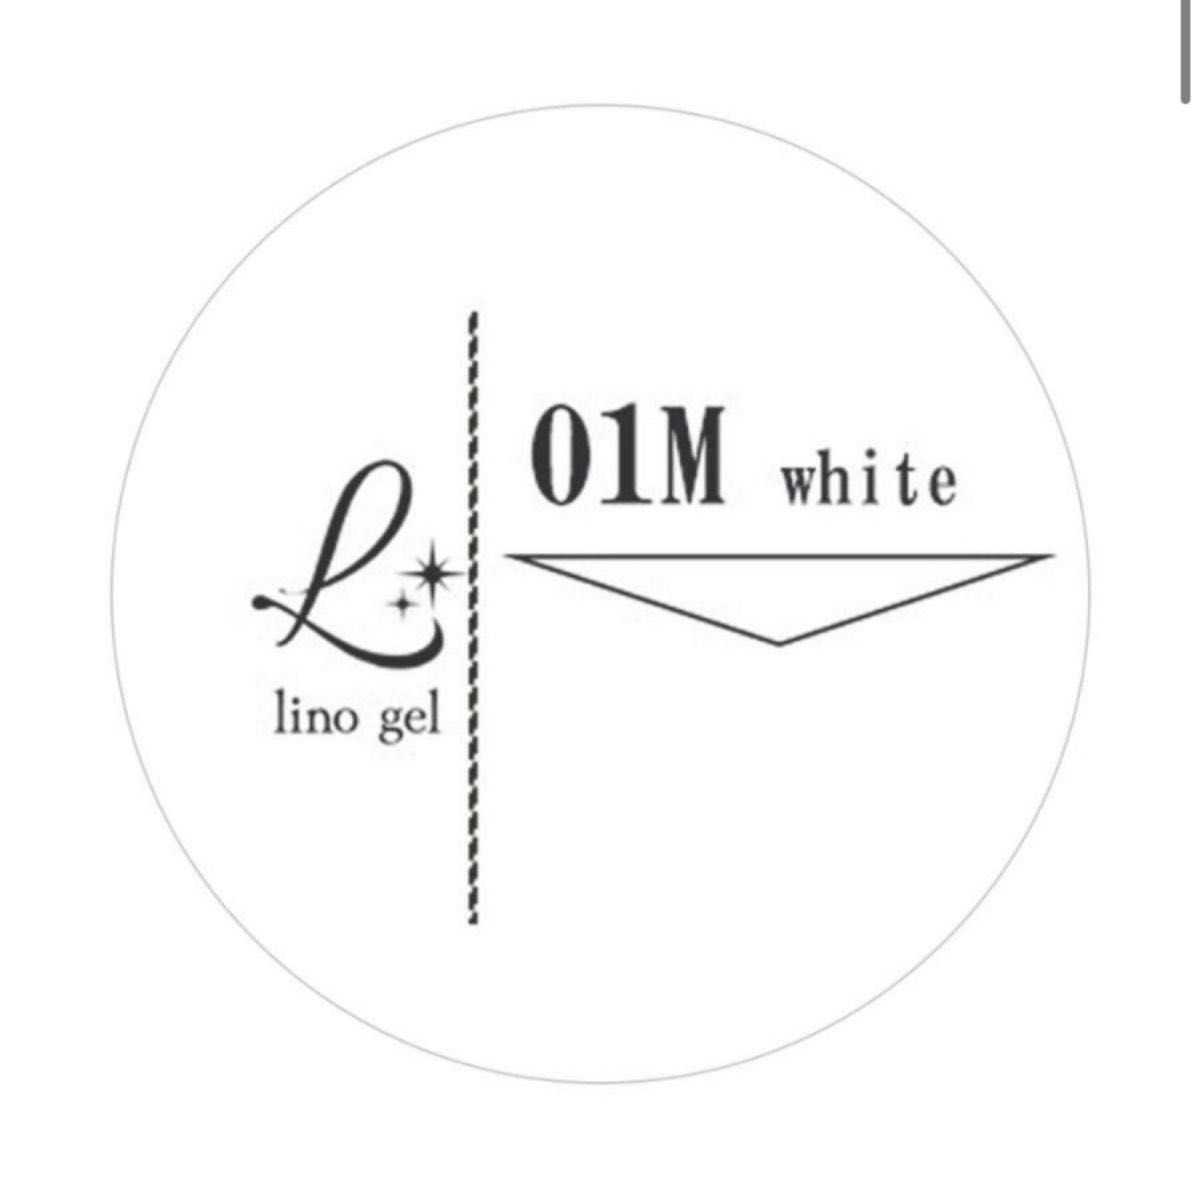 LinoGel リノジェル カラージェル 5g LED/UVライト対応 01M ホワイト white プロフェショナル ジェルネイ